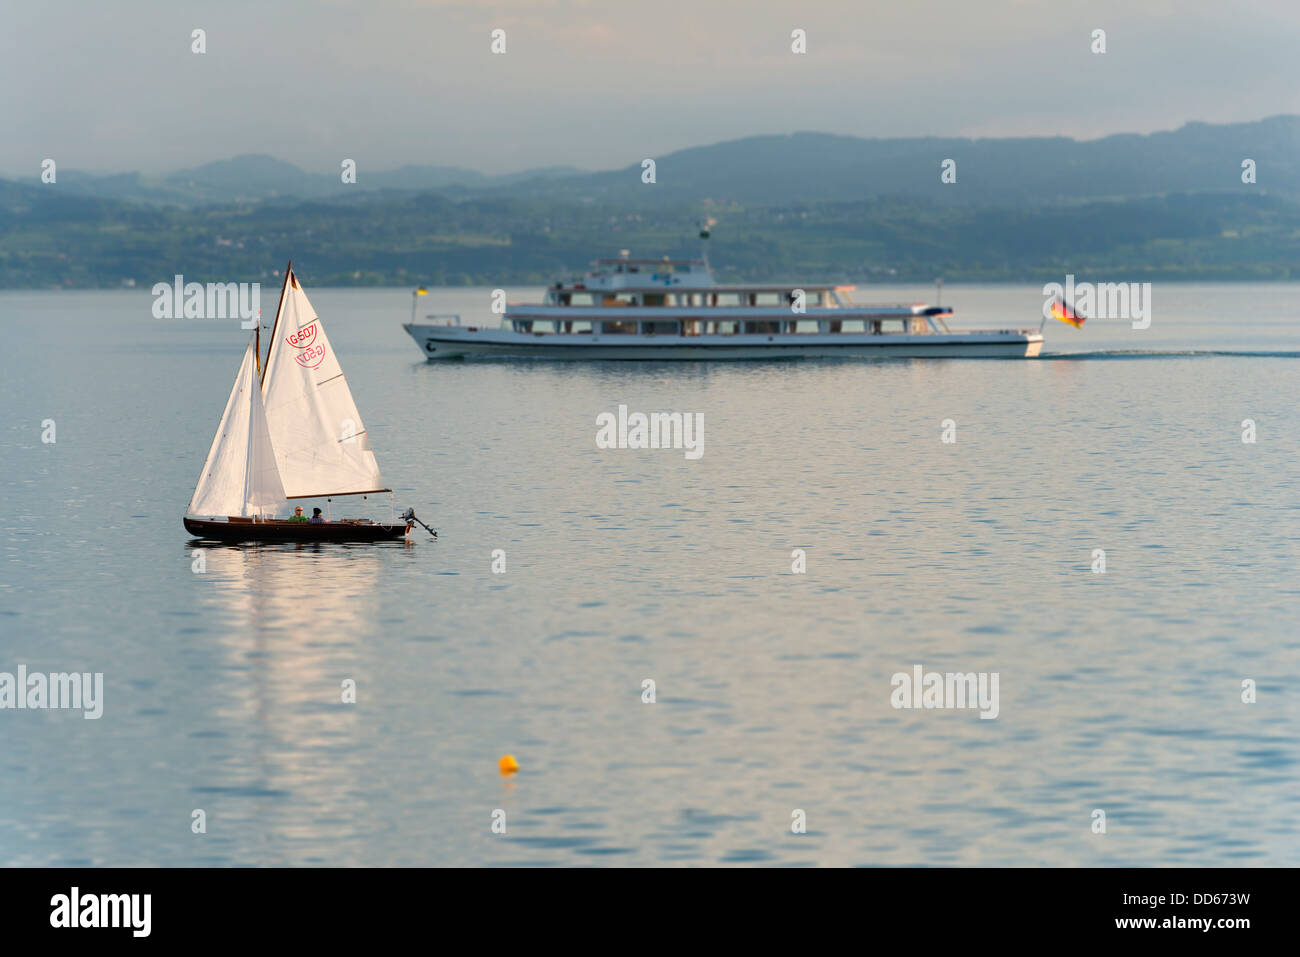 L'Allemagne, l'avis de passage des navires à passagers bateau à voile sur le lac de Constance Banque D'Images